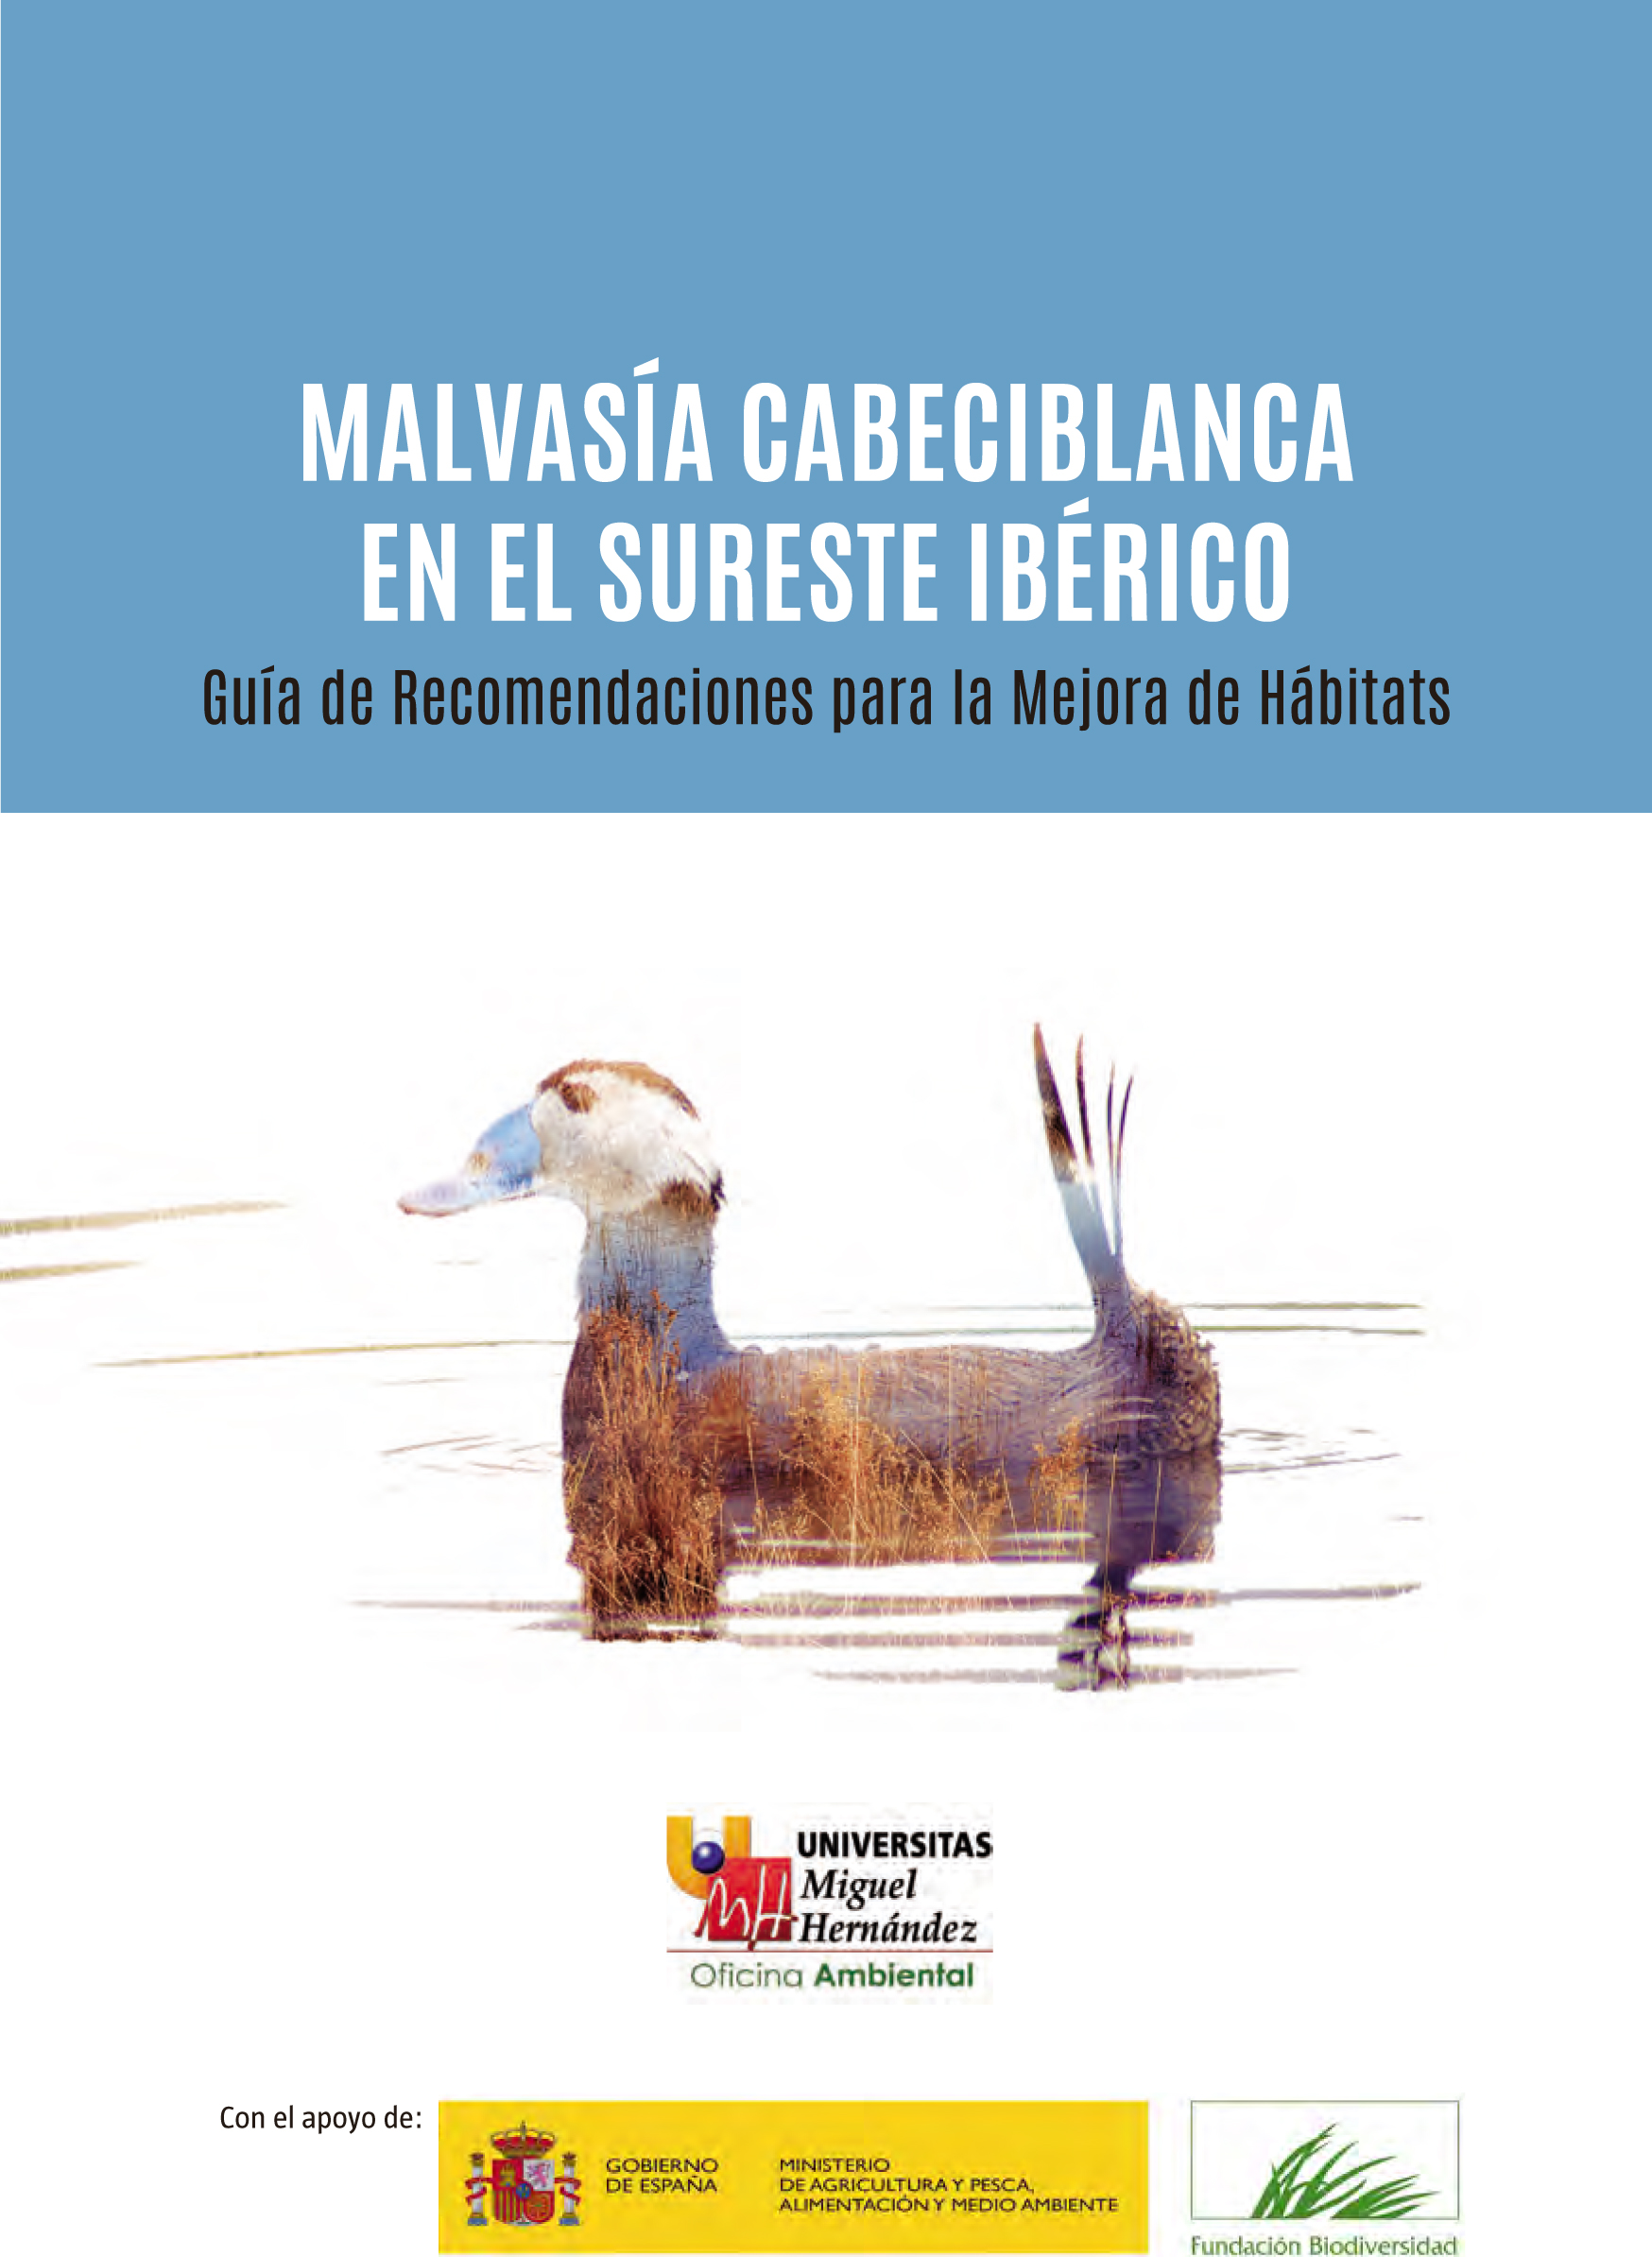 Portada de la Guía de Recomendaciones para la Mejora de Hábitats de la Malvasía Cabeciblanca en el Sureste Ibérico, de la UMH